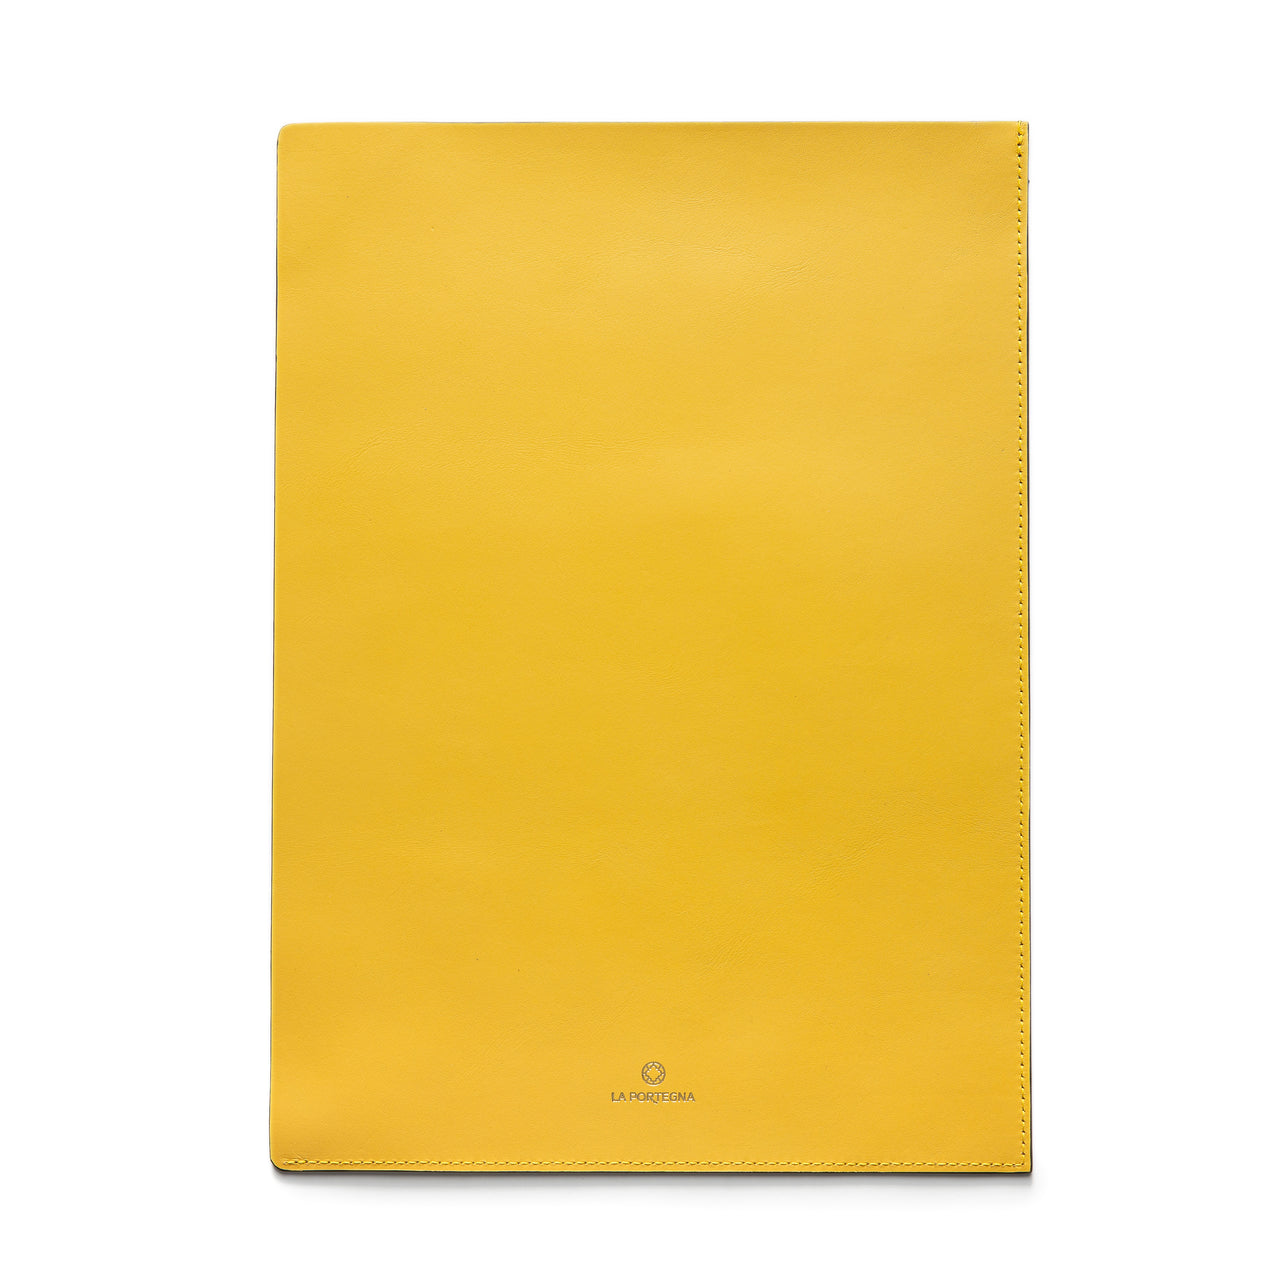 Yellow document case